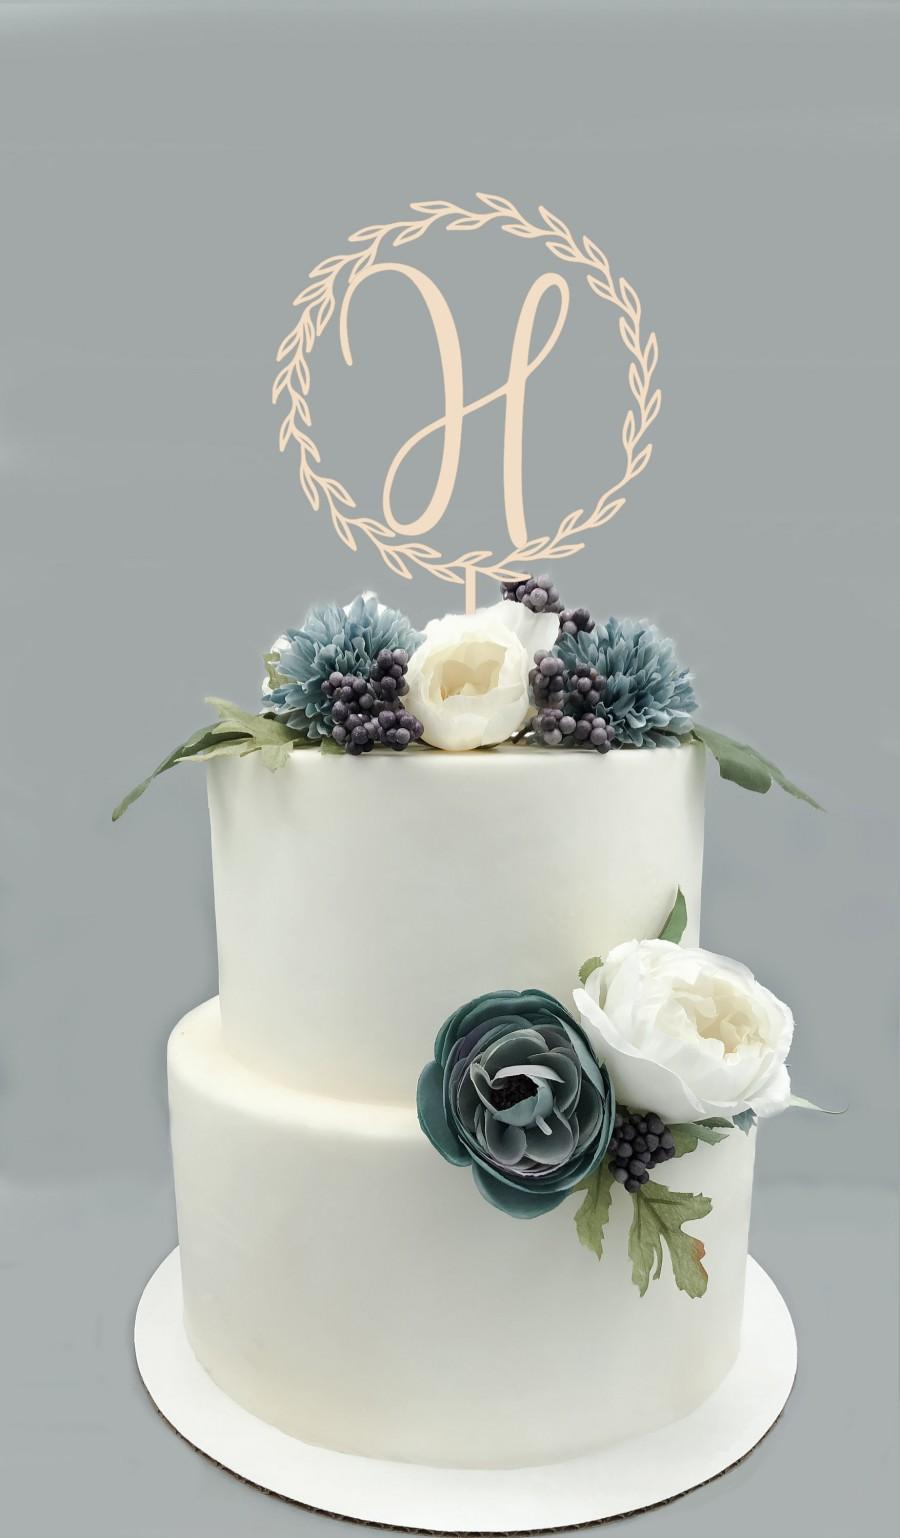 Wedding - Personalized Wood Wreath Cake Topper - Custom Monogram Wedding Cake Topper, Rustic Wedding Decor, Cake Decor, Engagement Cake, Bridal Shower